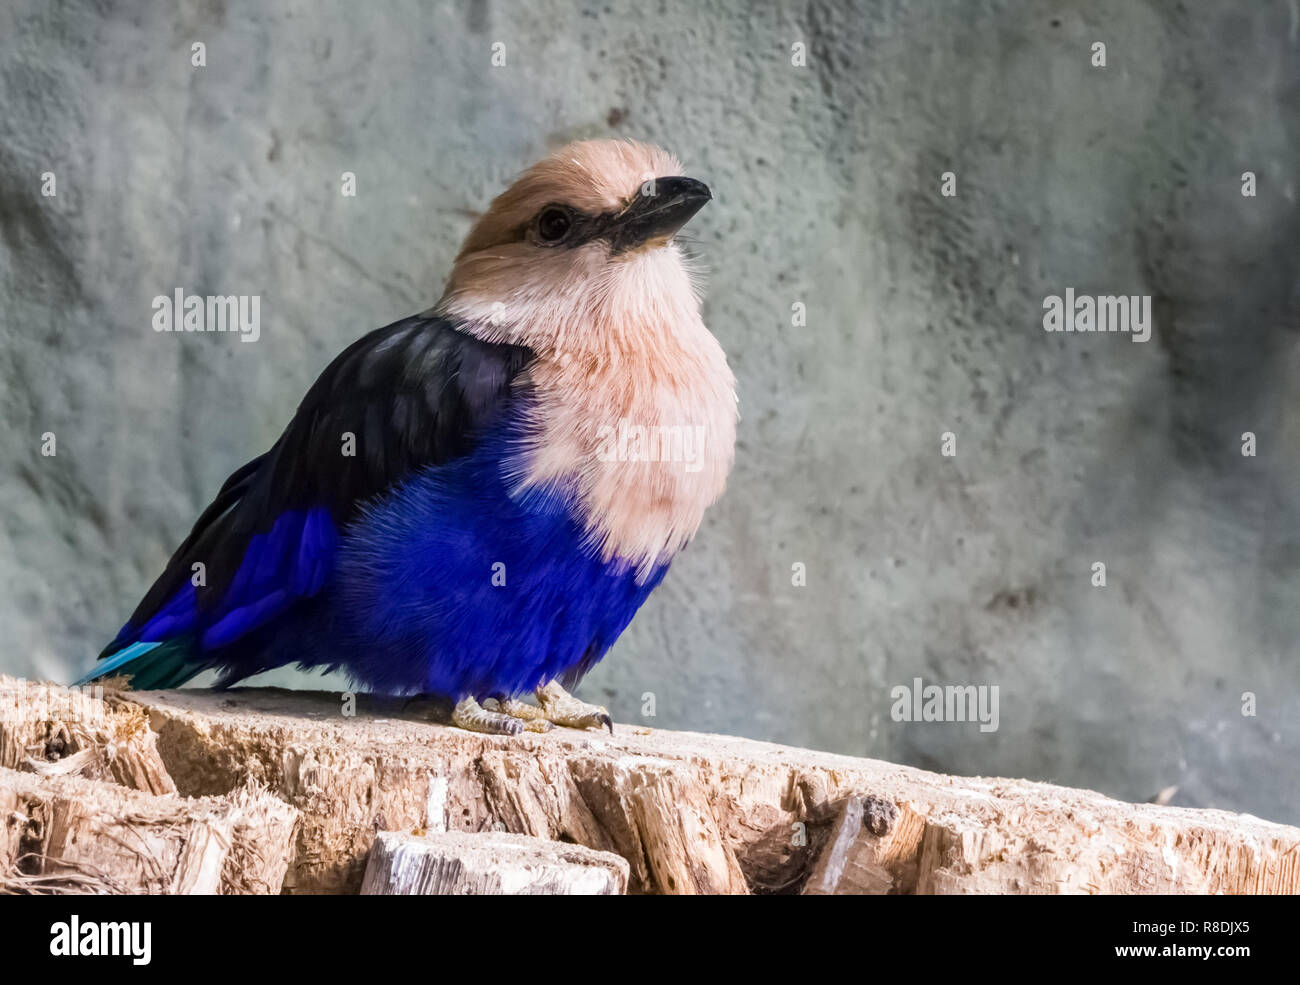 Nahaufnahme von einem blauen bauchige Walze sitzen auf einem Baumstumpf, ein schöner und bunter Vogel aus der Savanne Afrikas Stockfoto